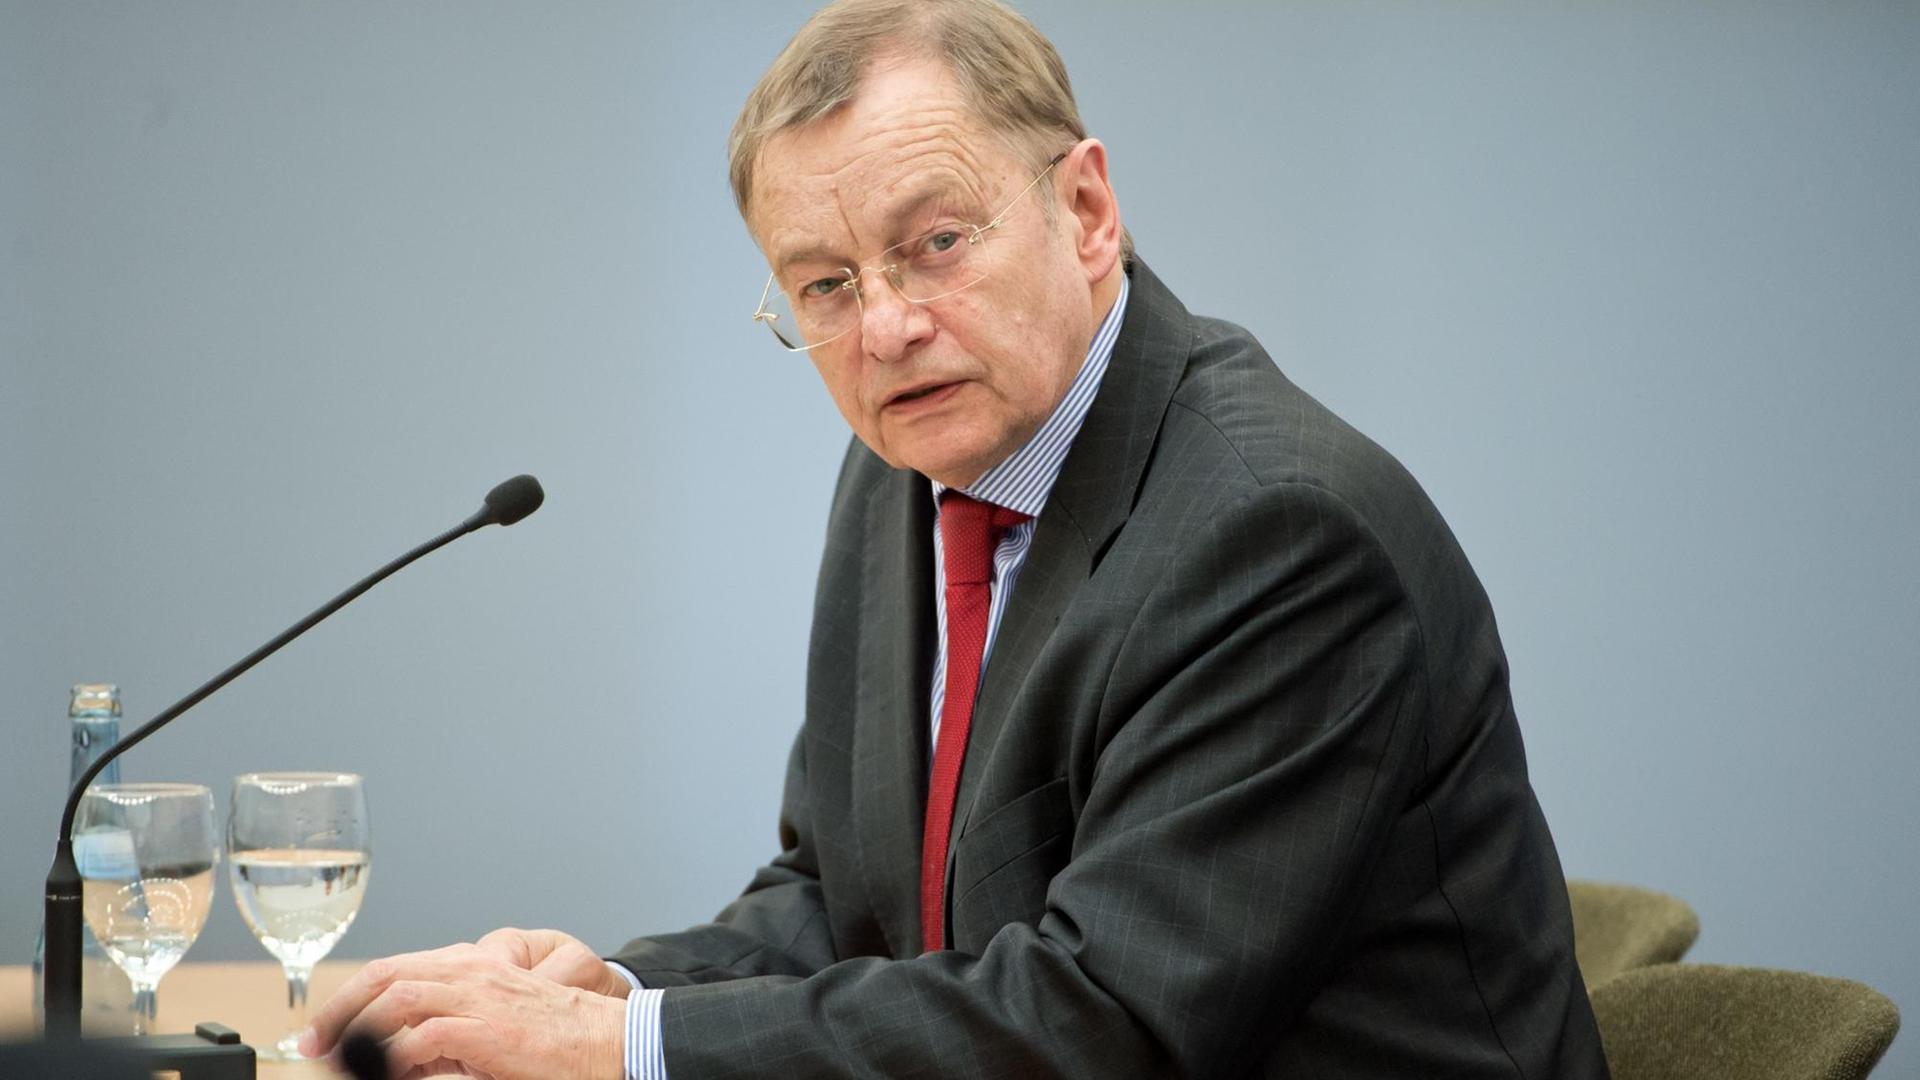 Der Politikwissenschafler Hans Joachim Funke im Zeuge vor dem Untersuchungsausschuss "Rechtsterrorismus/NSU" im Landtag von Baden-Württemberg